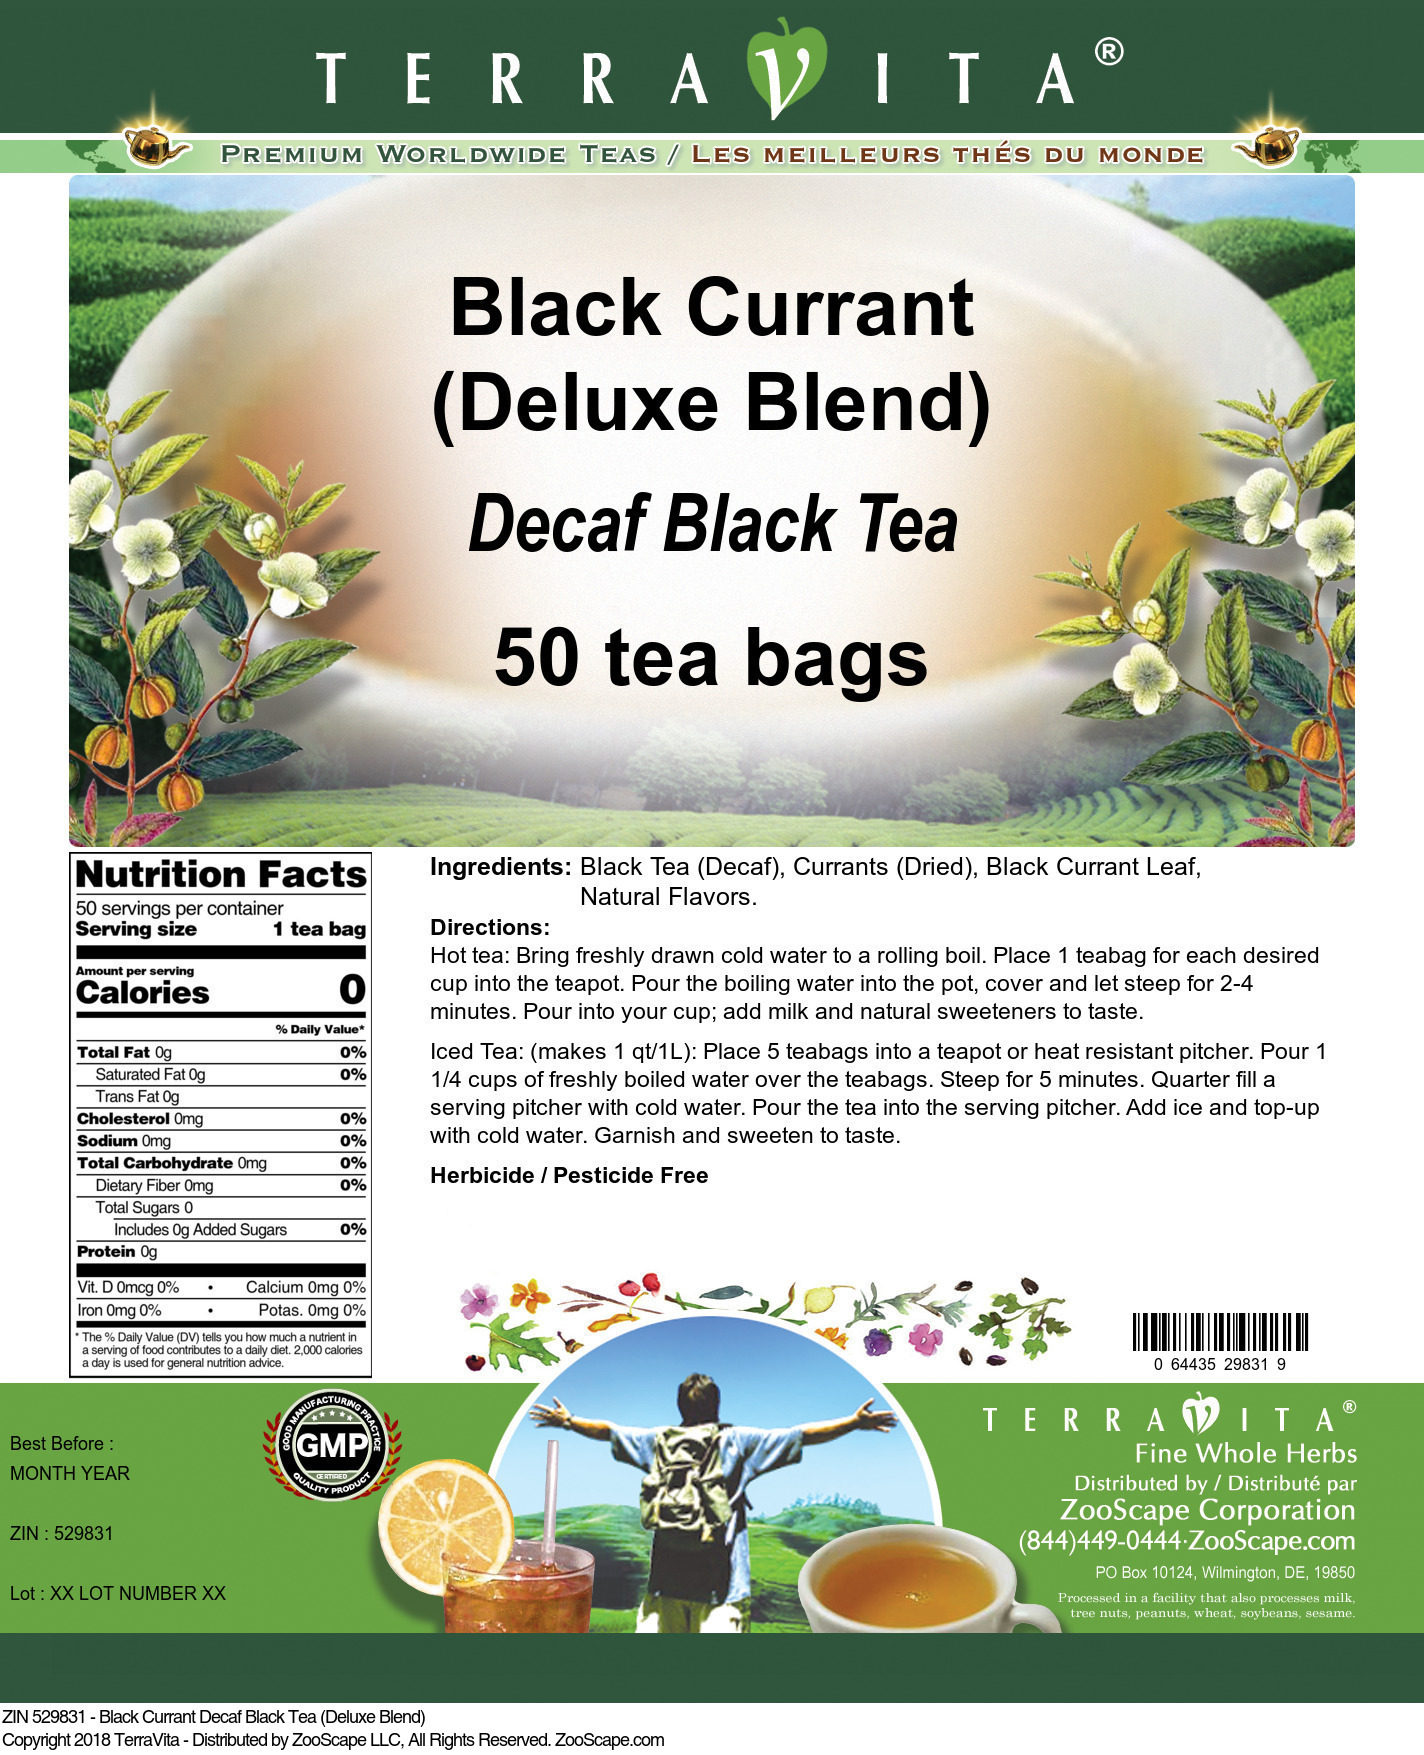 Black Currant Decaf Black Tea (Deluxe Blend) - Label